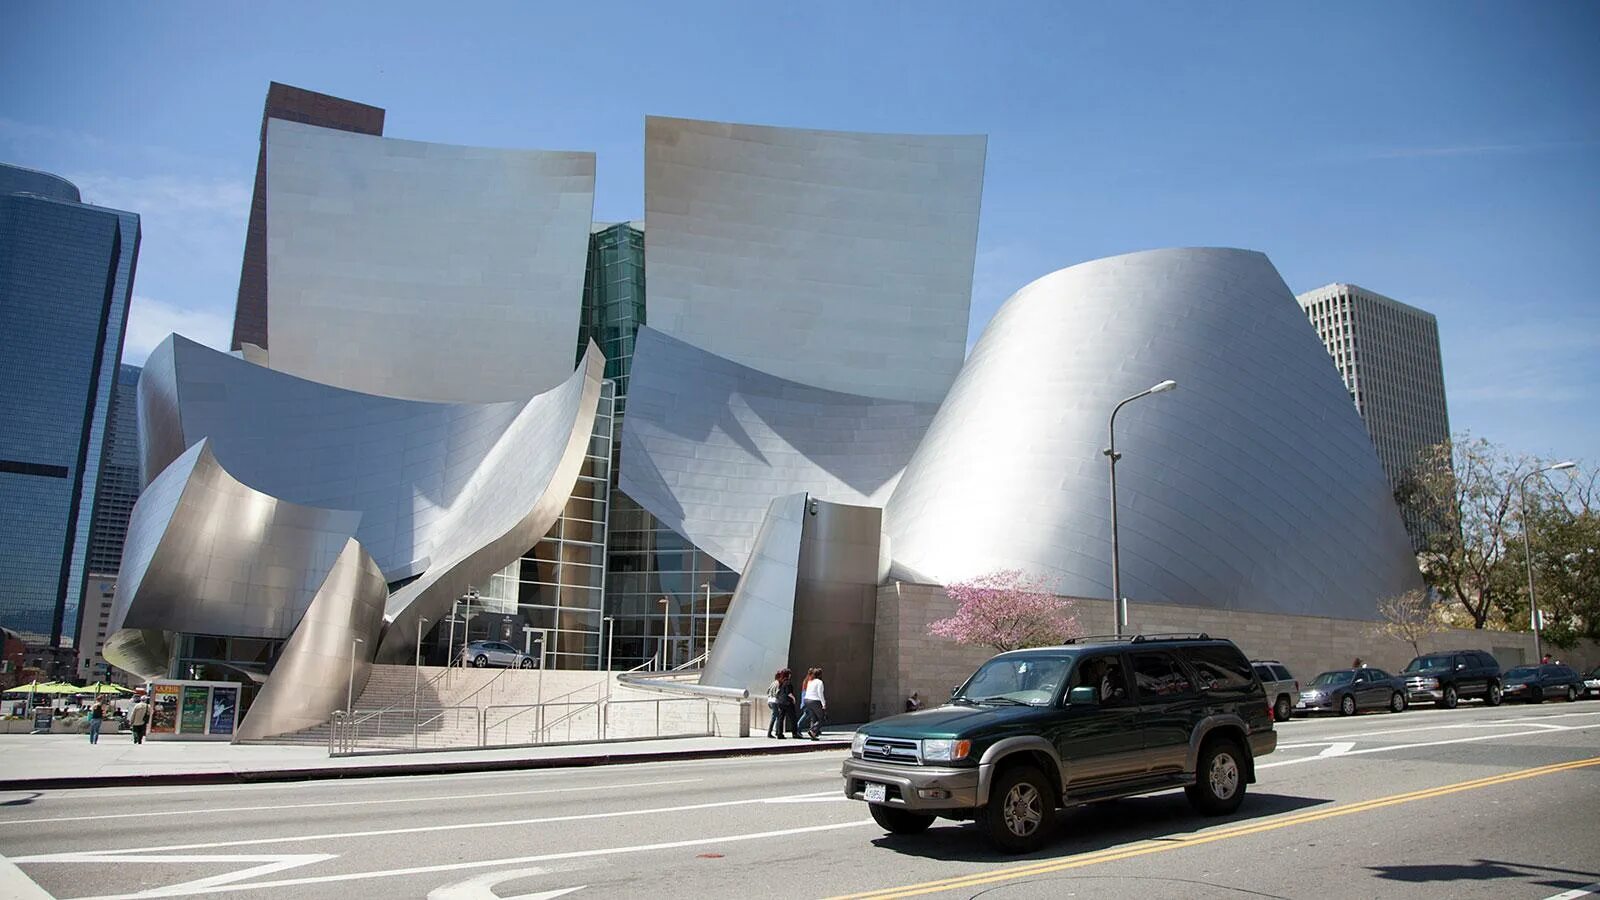 Фрэнк Гери музей Уолта Диснея. Фрэнк Гери концертный зал. Концертный зал Уолта Диснея в Лос-Анджелесе, США. Здание концертного зала имени Уолта Диснея в Лос-Анджелесе. Концертный зал диснея